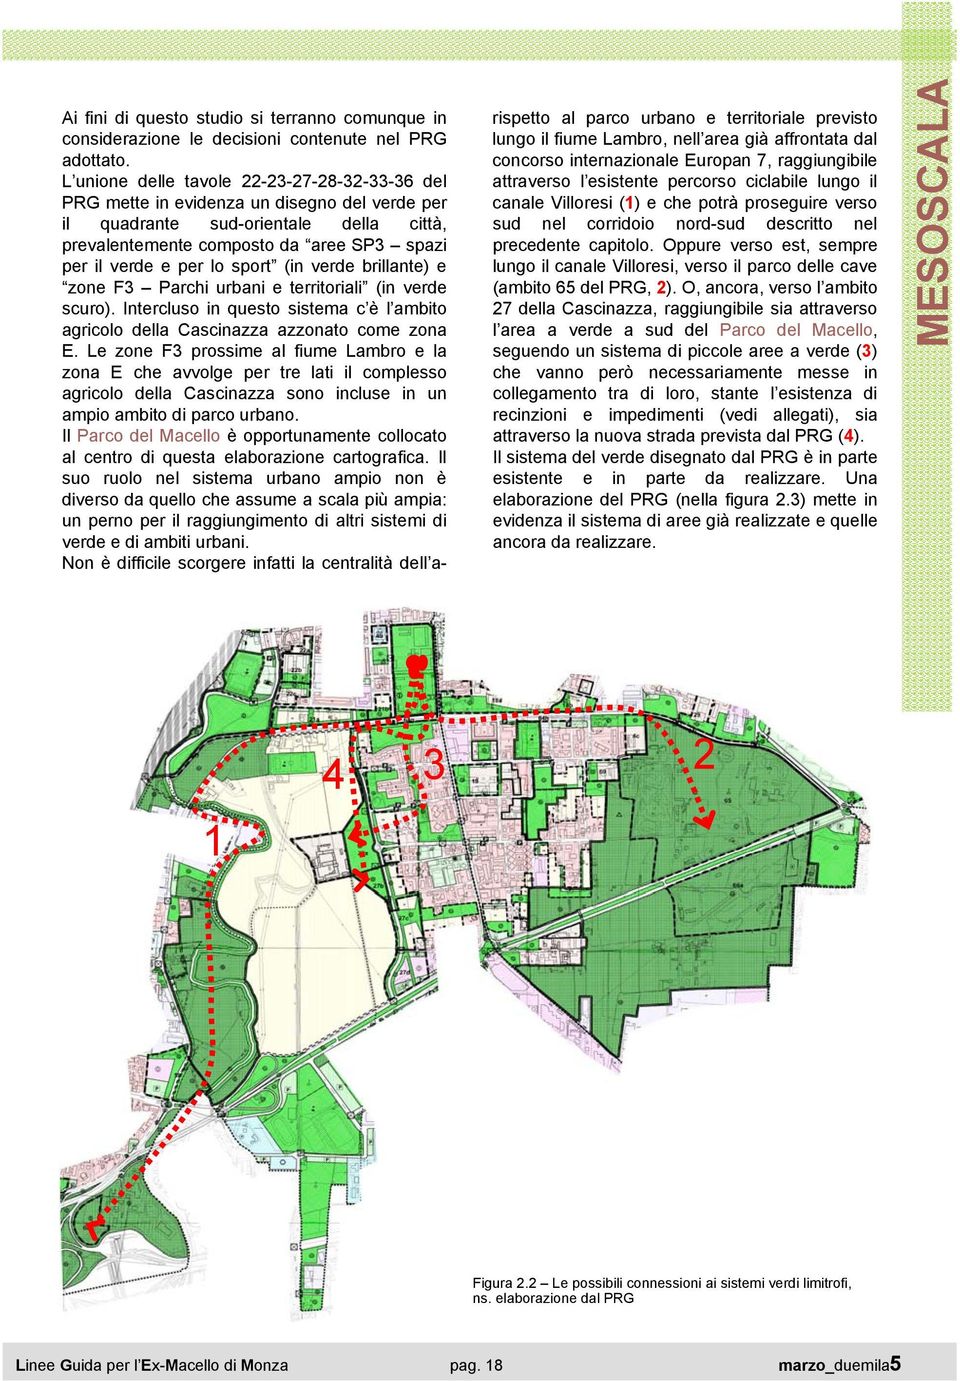 sport (in verde brillante) e zone F3 Parchi urbani e territoriali (in verde scuro). Intercluso in questo sistema c è l ambito agricolo della Cascinazza azzonato come zona E.